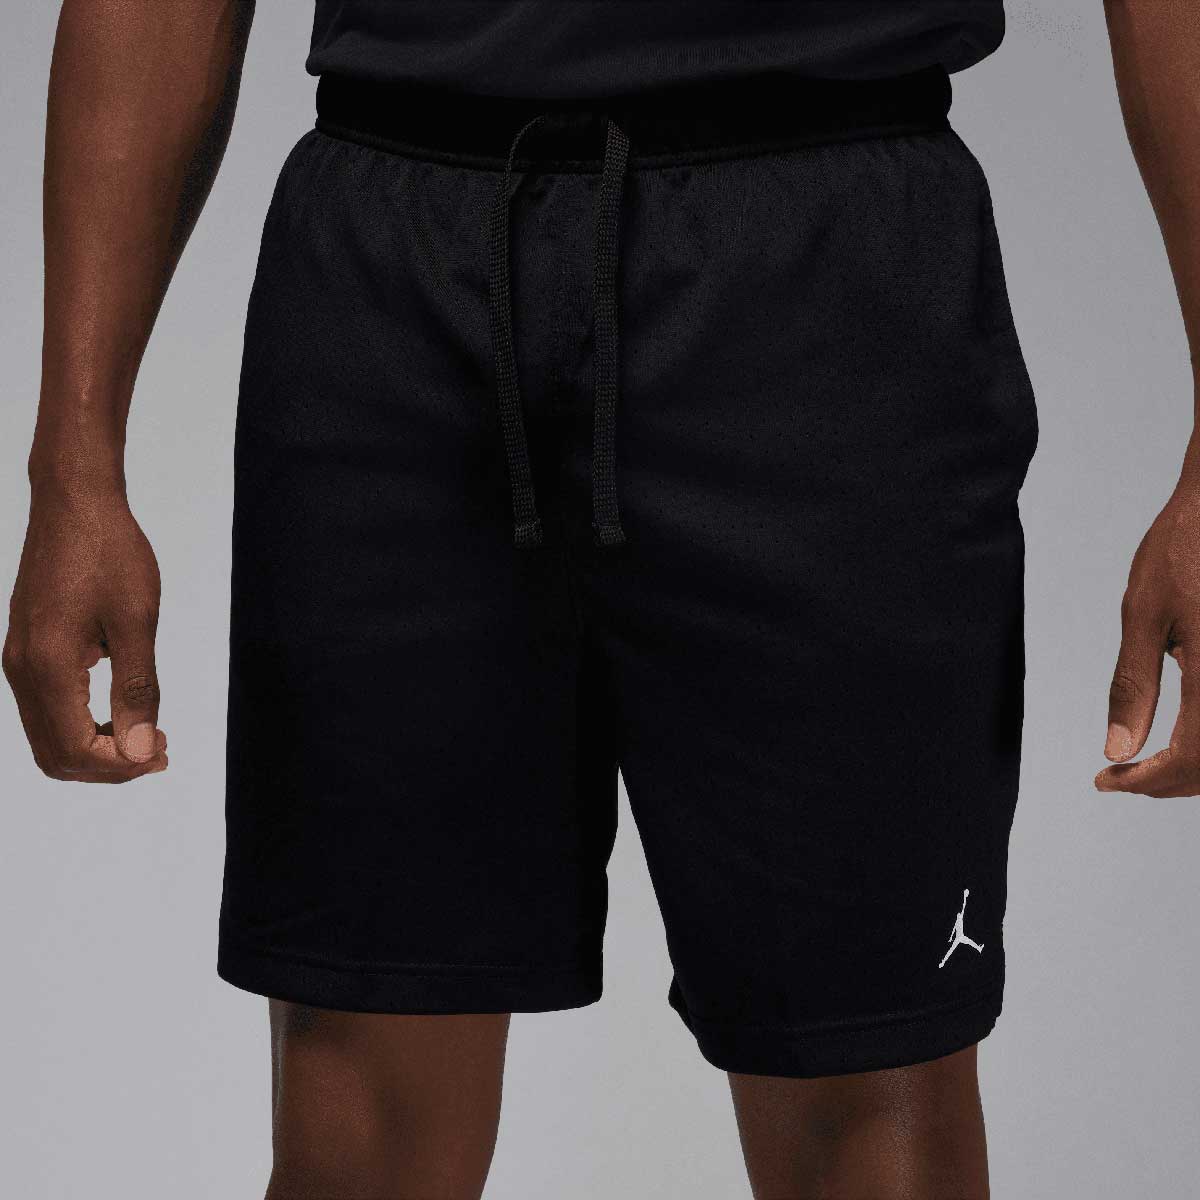 Jordan M J Sport Dri-fit Mesh Shorts, Schwarz/(weiß) S